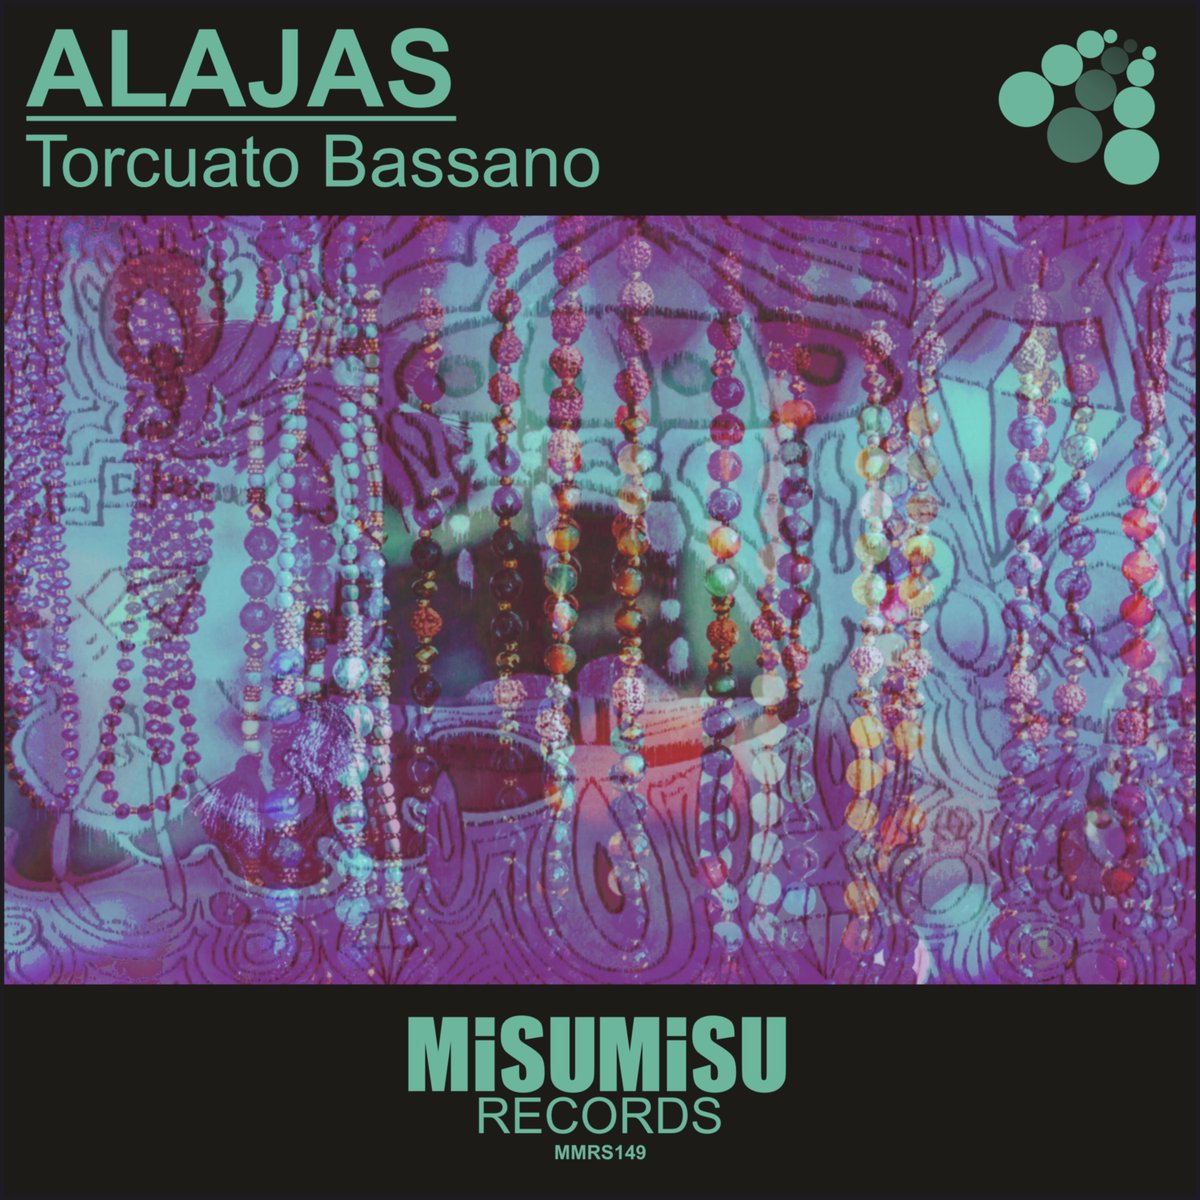 #torcuatobassano #alajas #digitalcover #cuartaraartdesign #misumisurecords #label #records